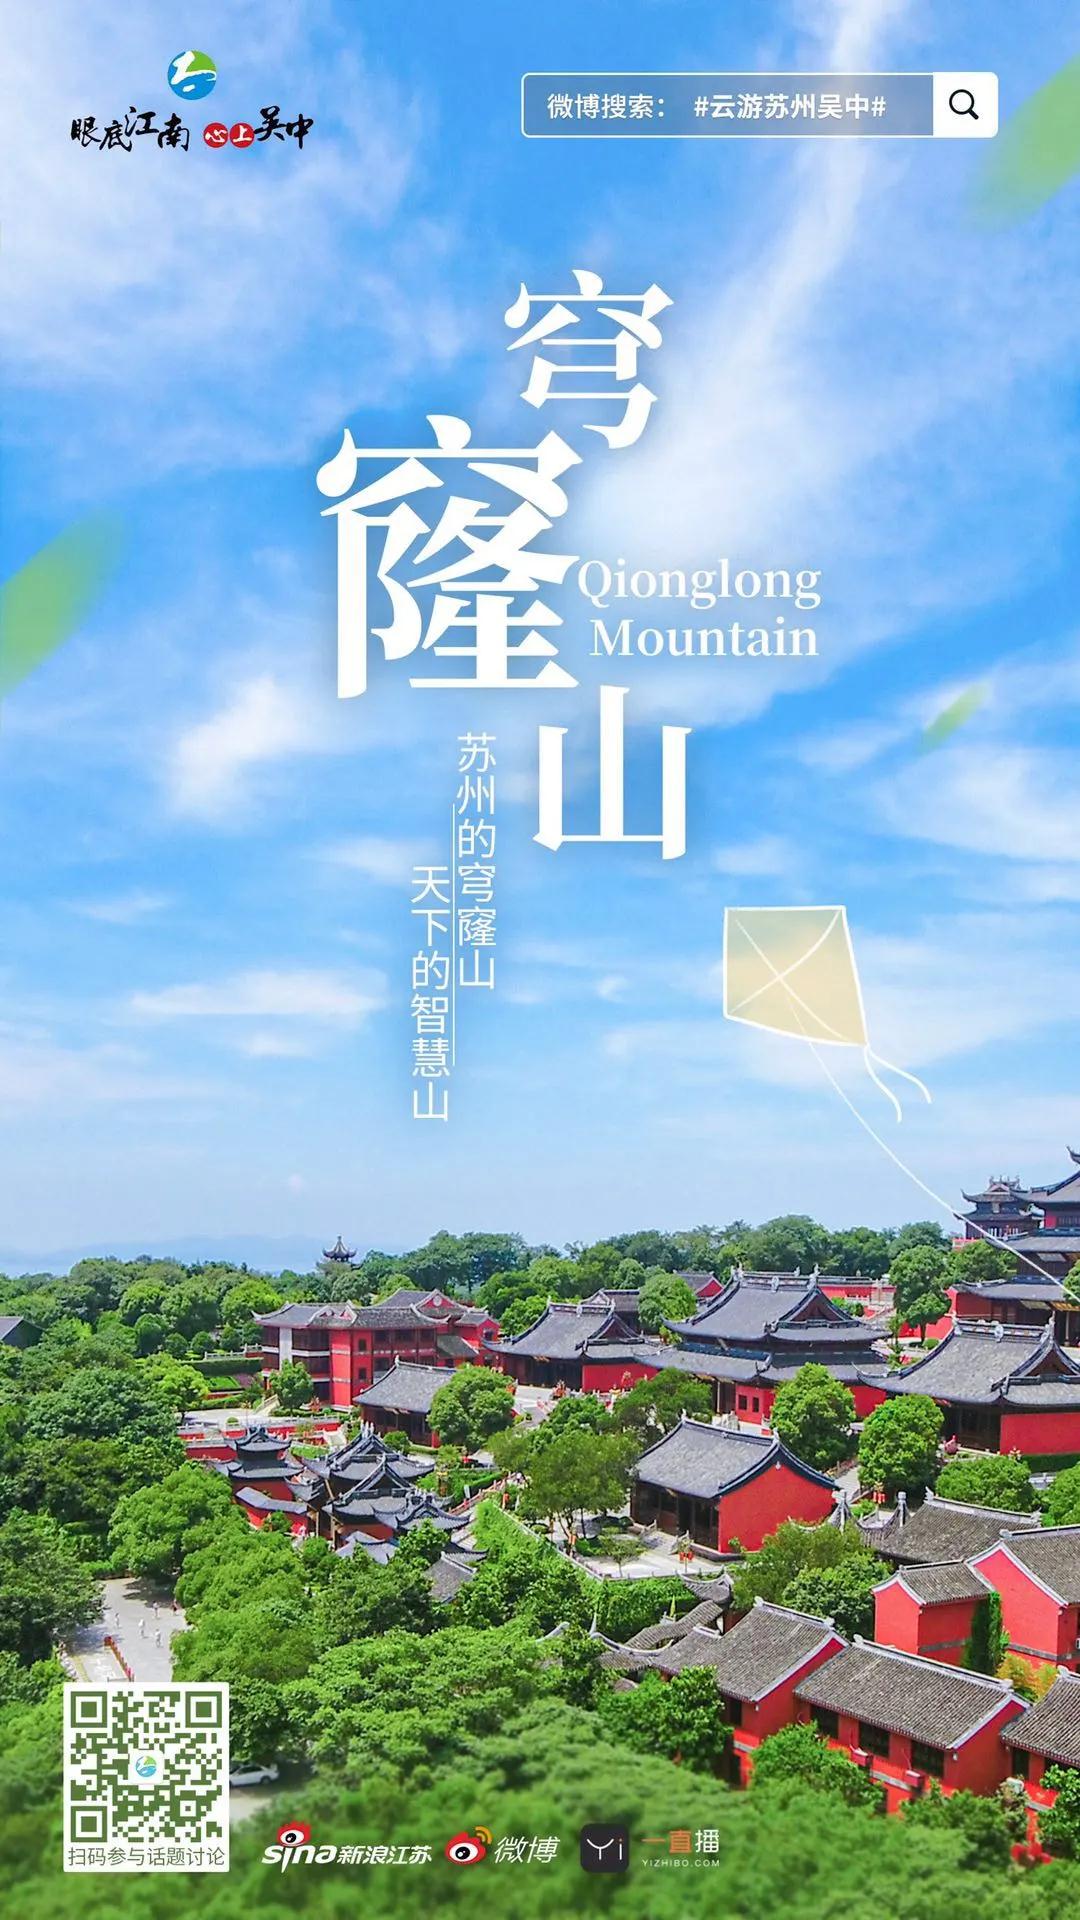 就在明天！2020苏州吴中太湖文化旅游节云开幕